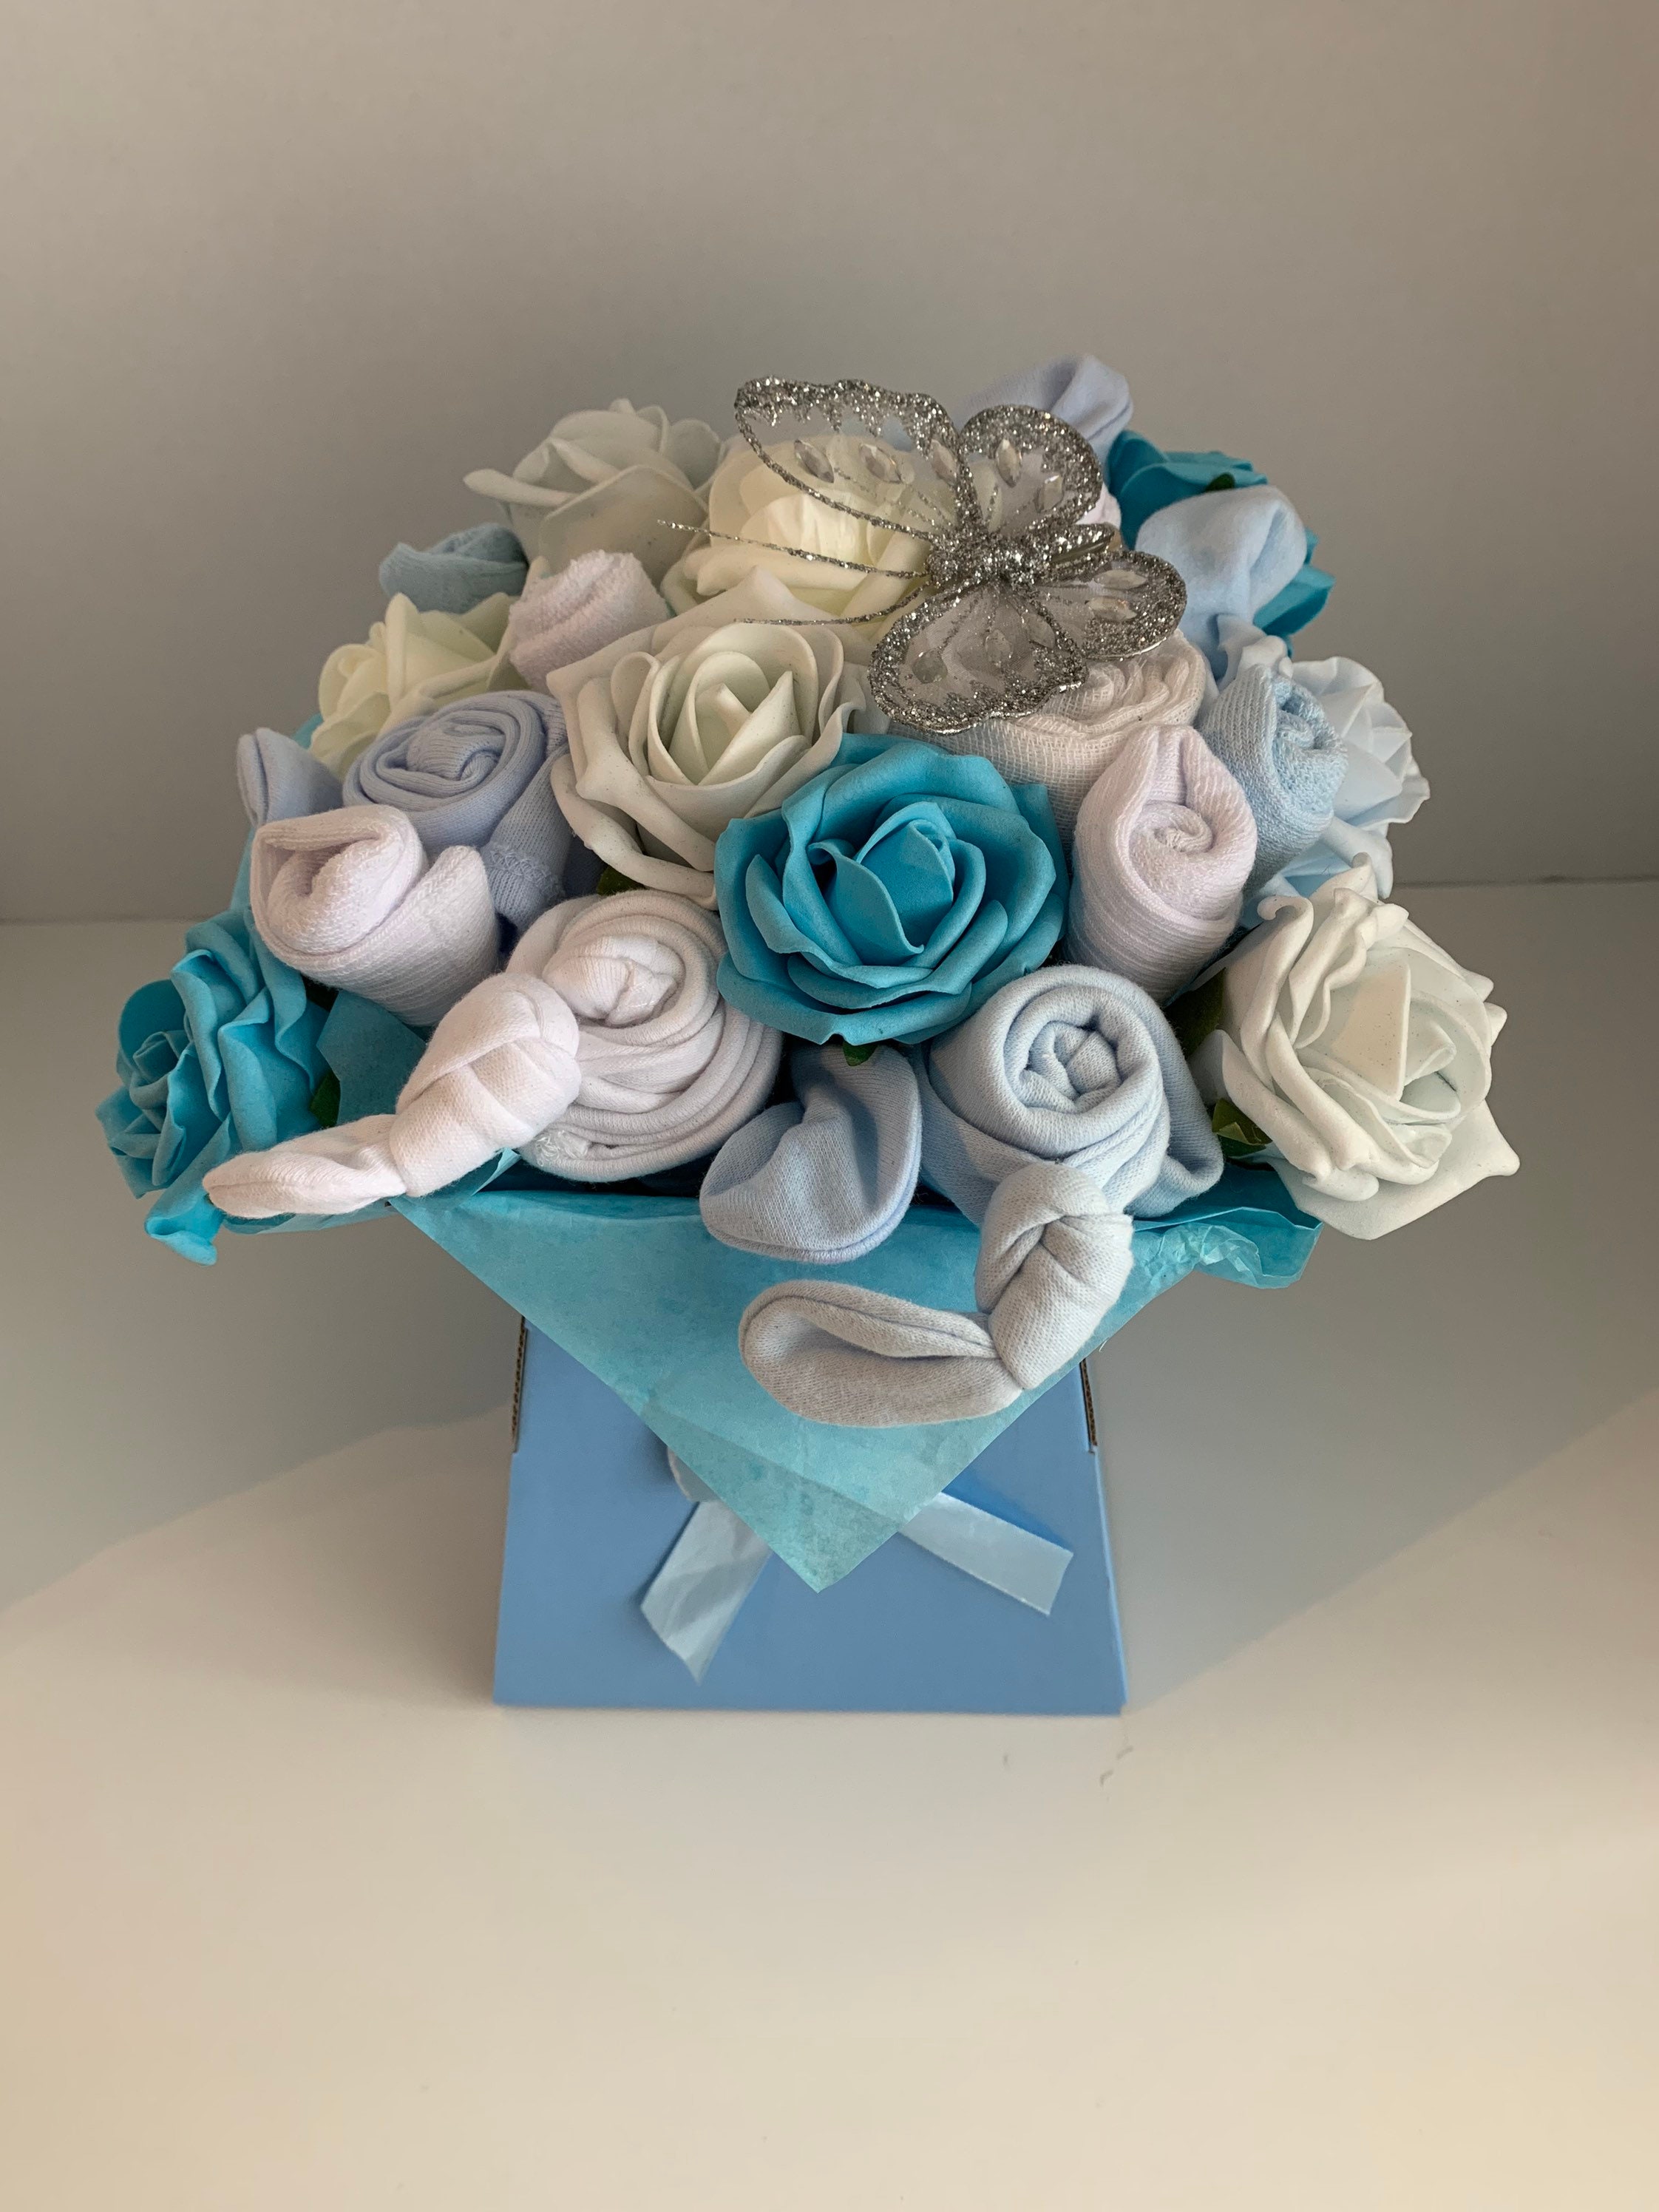 Cadeau de naissance bouquet de layette fille - Babys Cakes